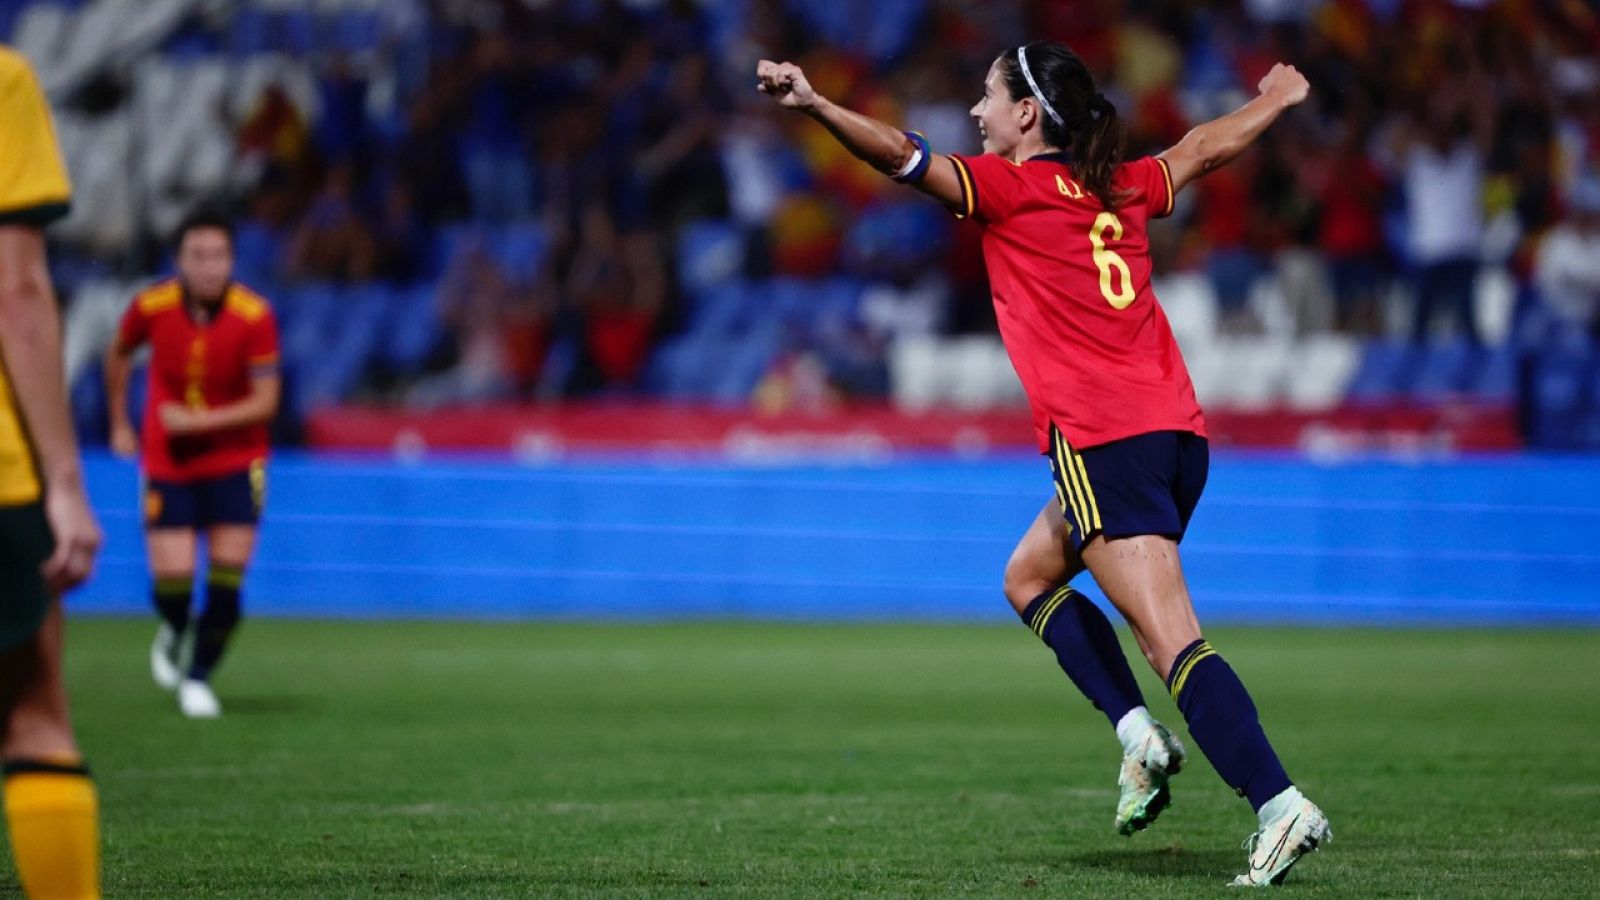 Resumen del España 7-0 Australia de fútbol femenino